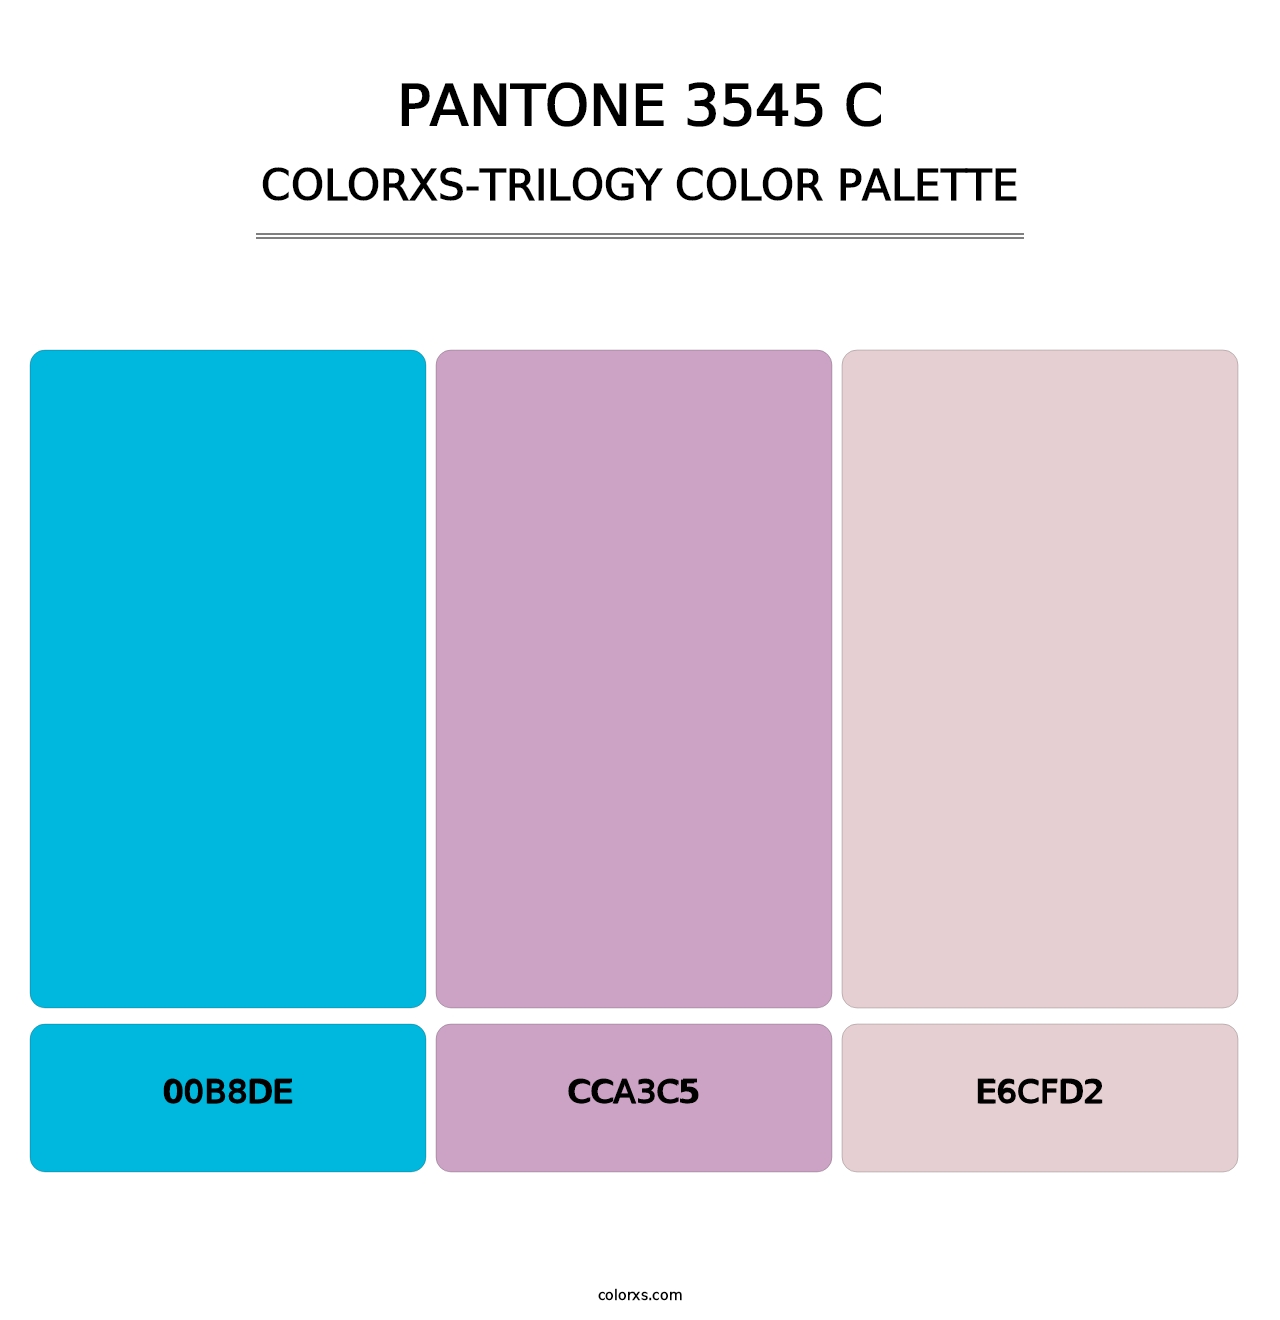 PANTONE 3545 C - Colorxs Trilogy Palette